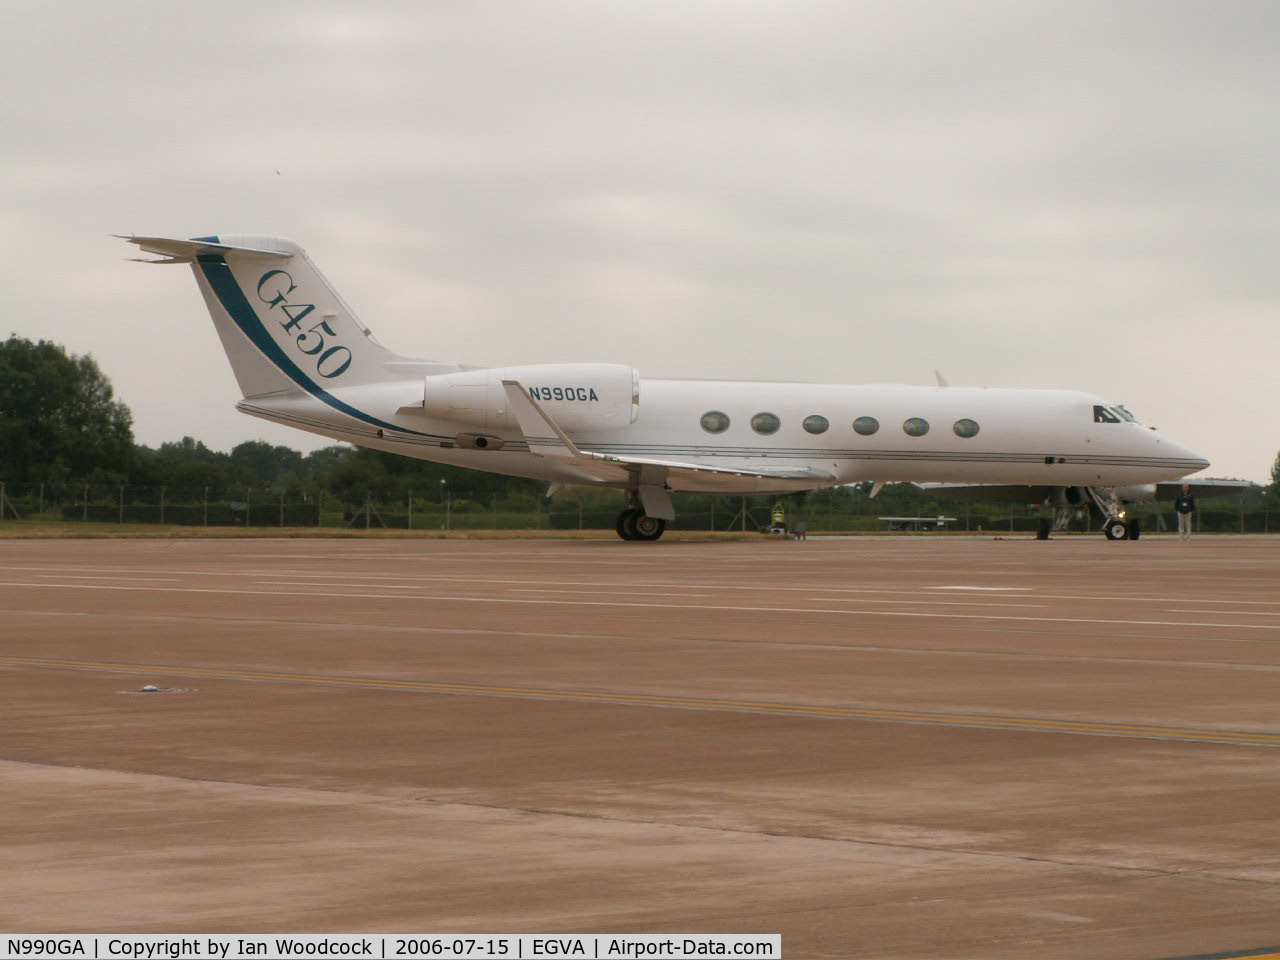 N990GA, 2008 Gulfstream Aerospace GV-SP (G550) C/N 5200, Gulfstream G450/RAF Fairford